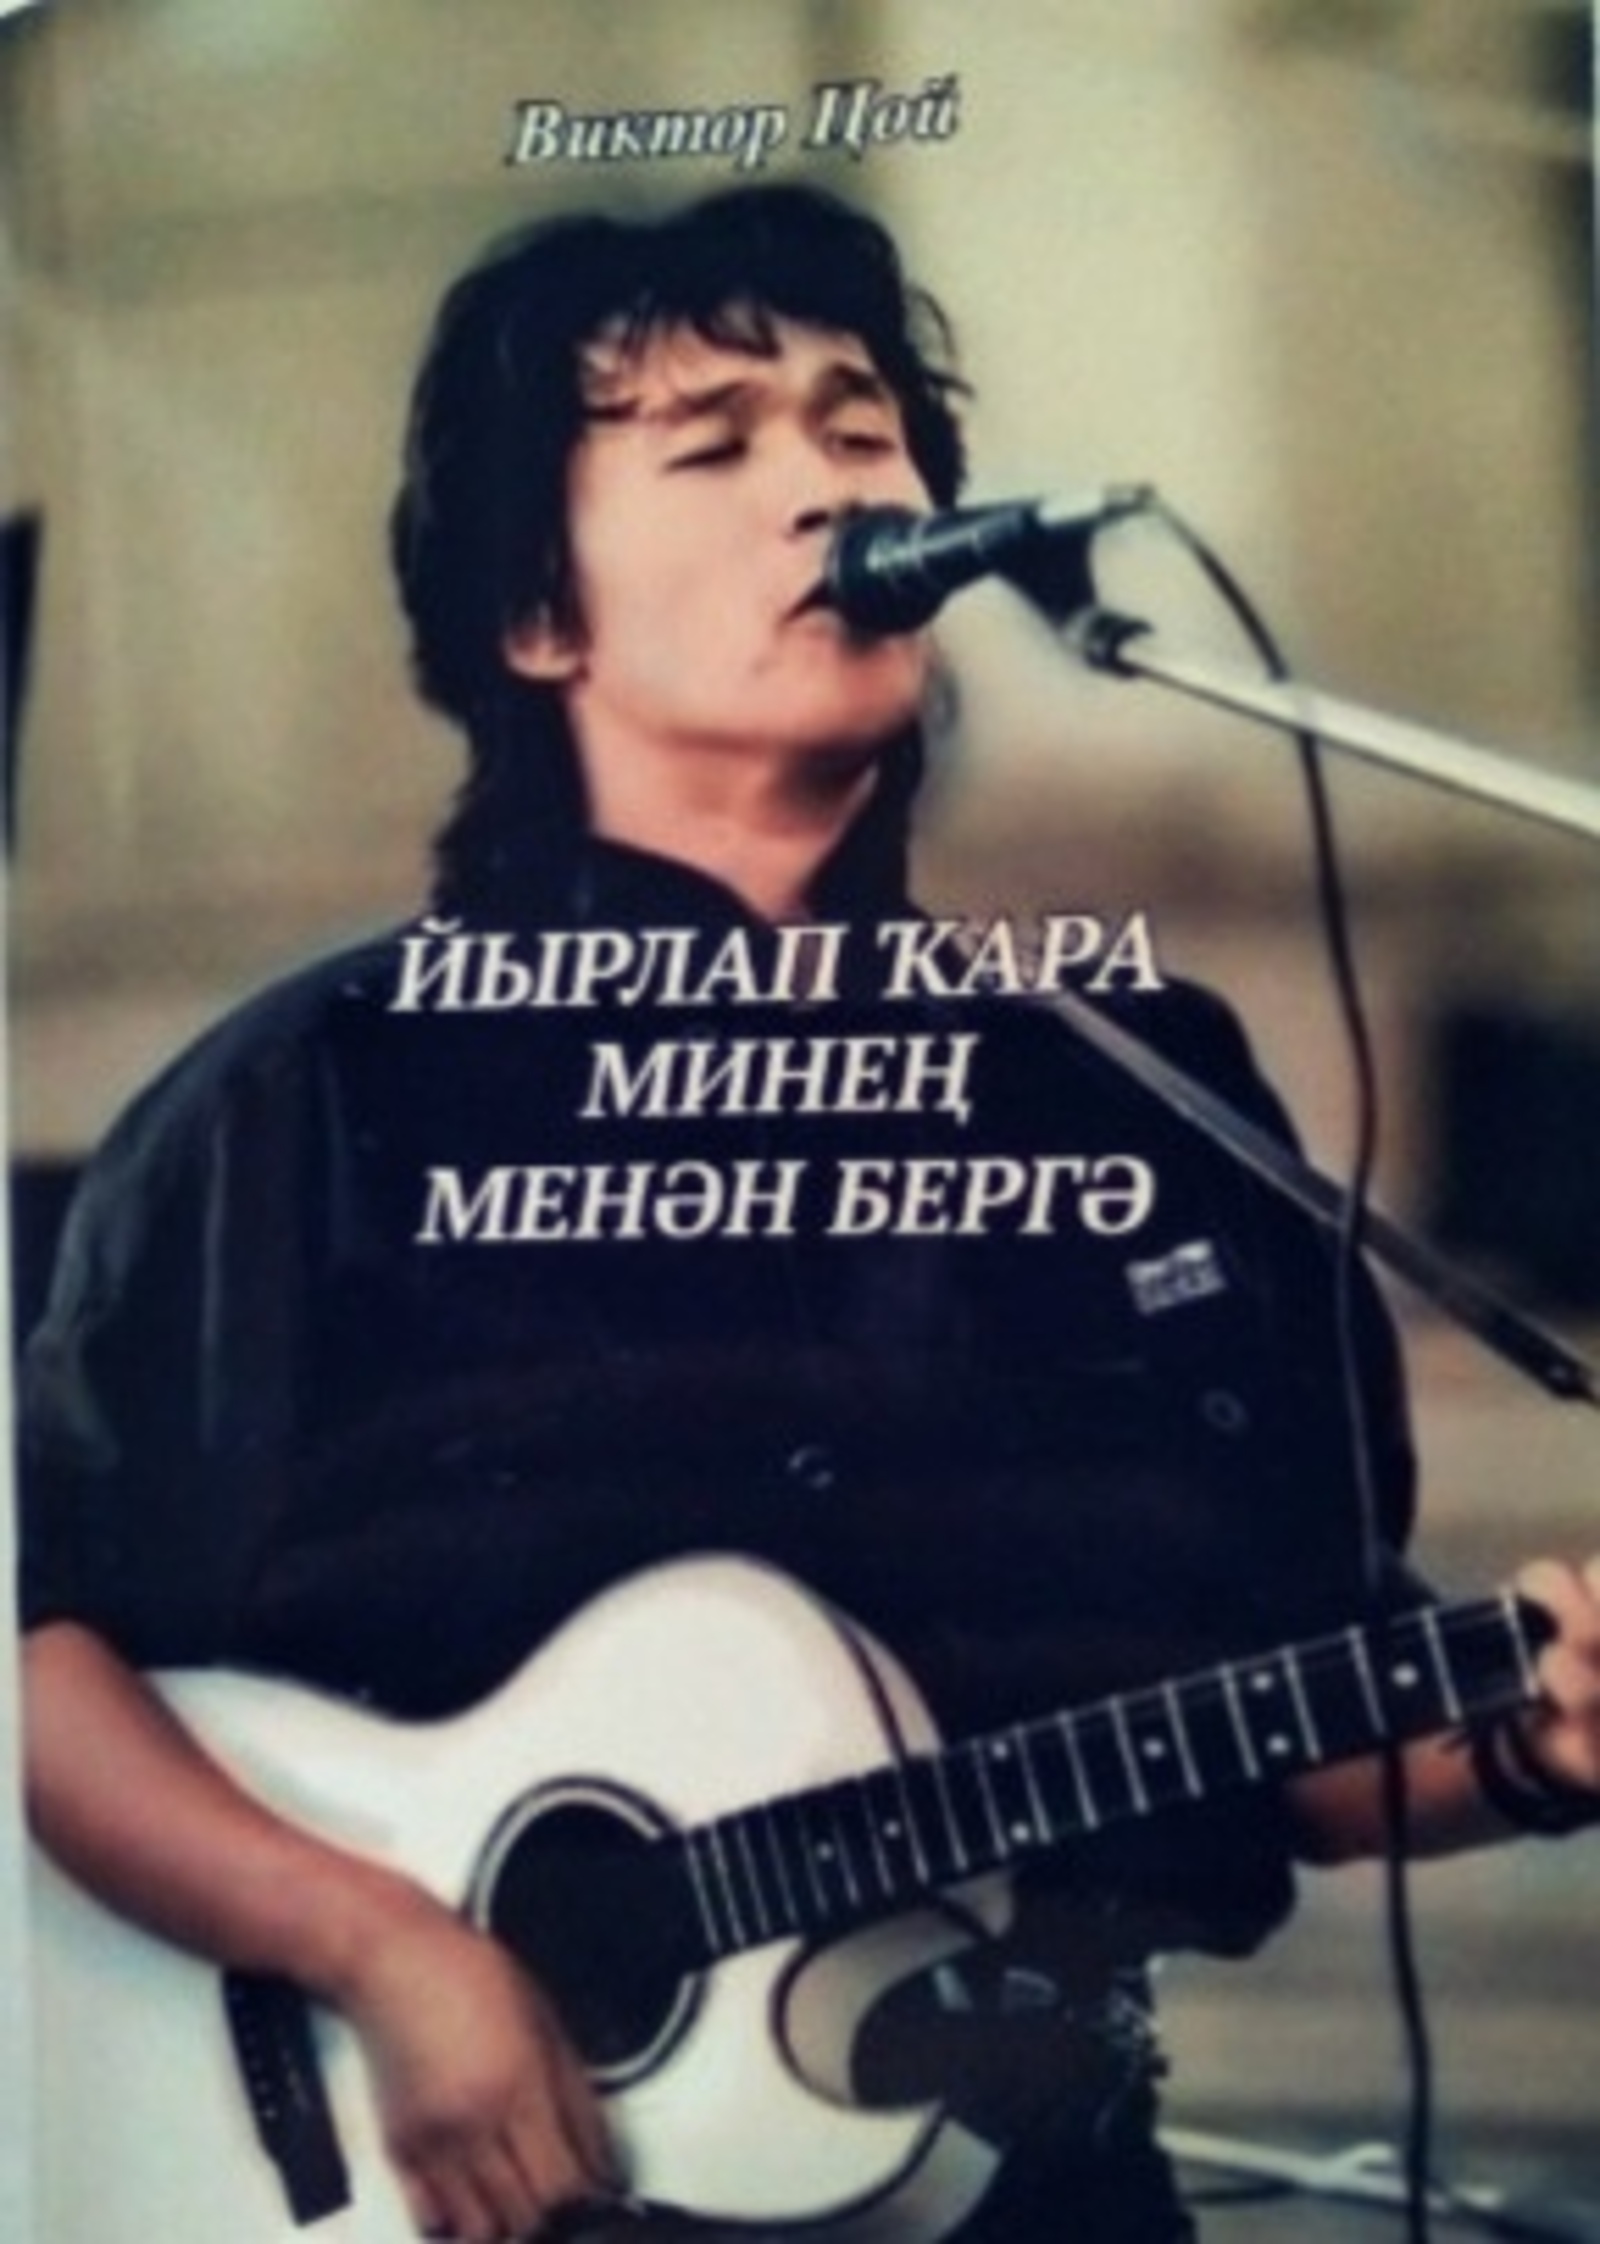 В Башкирии поэт издал сборник переводов песен Виктора Цоя на башкирском языке